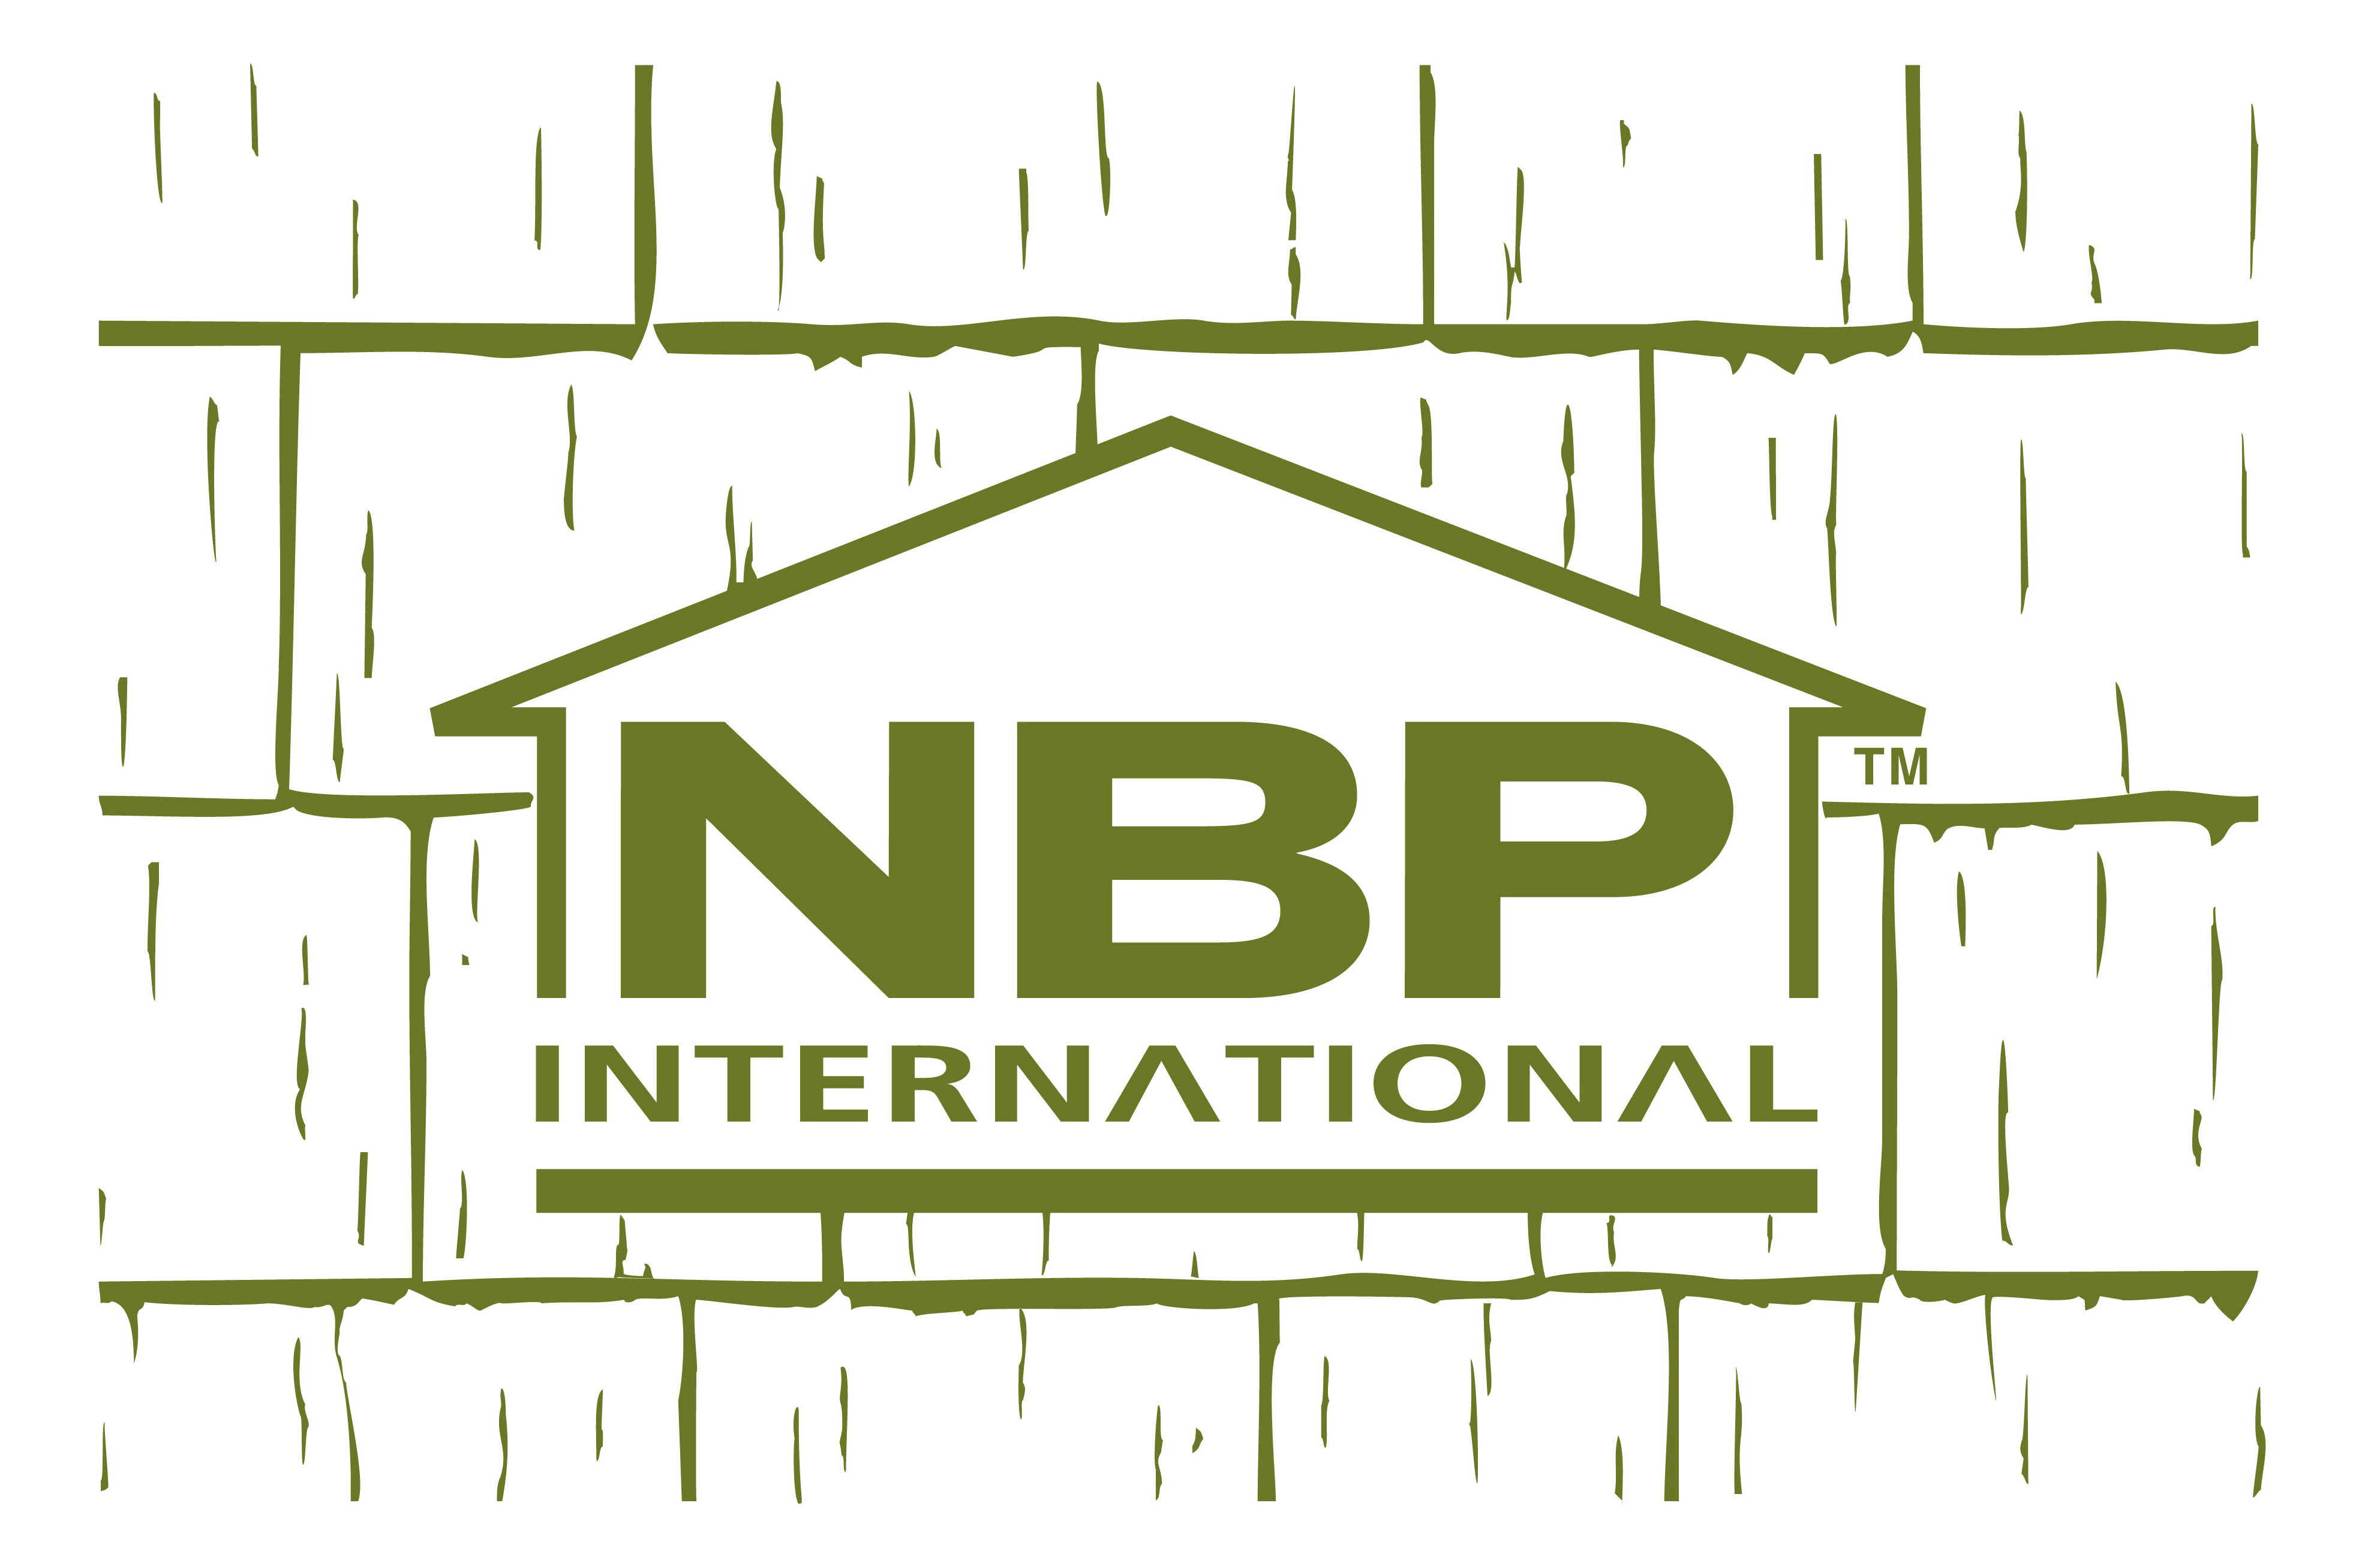 NBP Logo.jpg (419720 bytes)